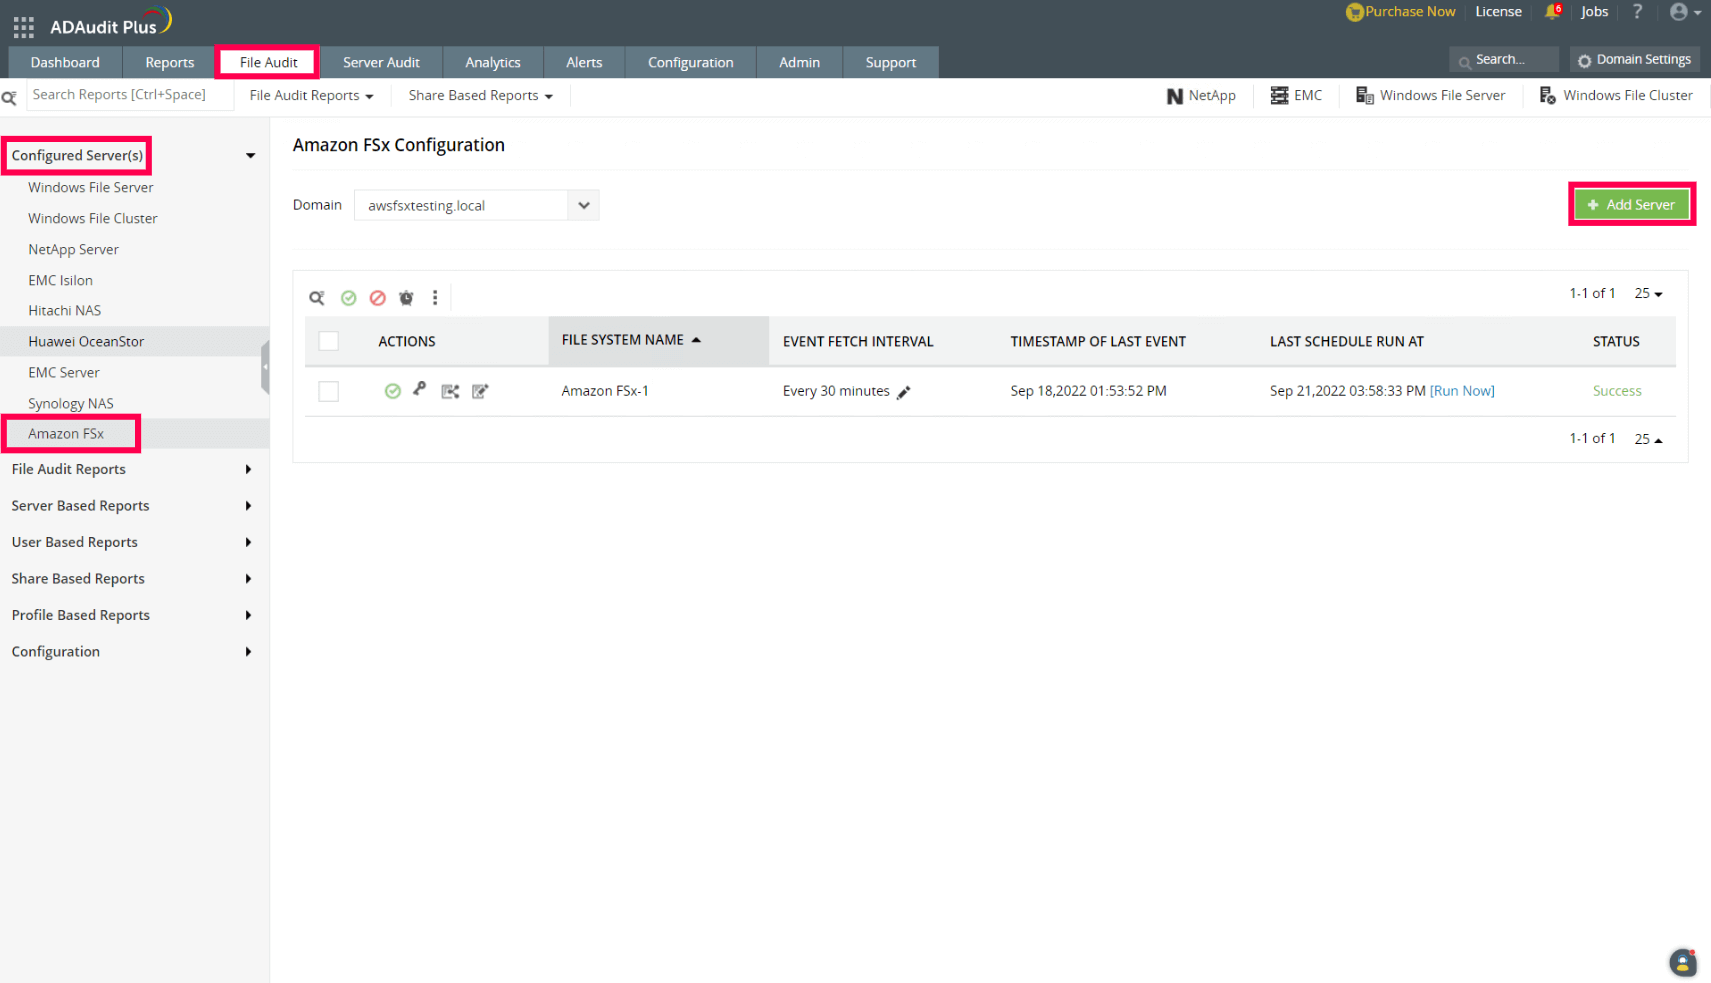 Configure Amazon FSx in ADAudit Plus